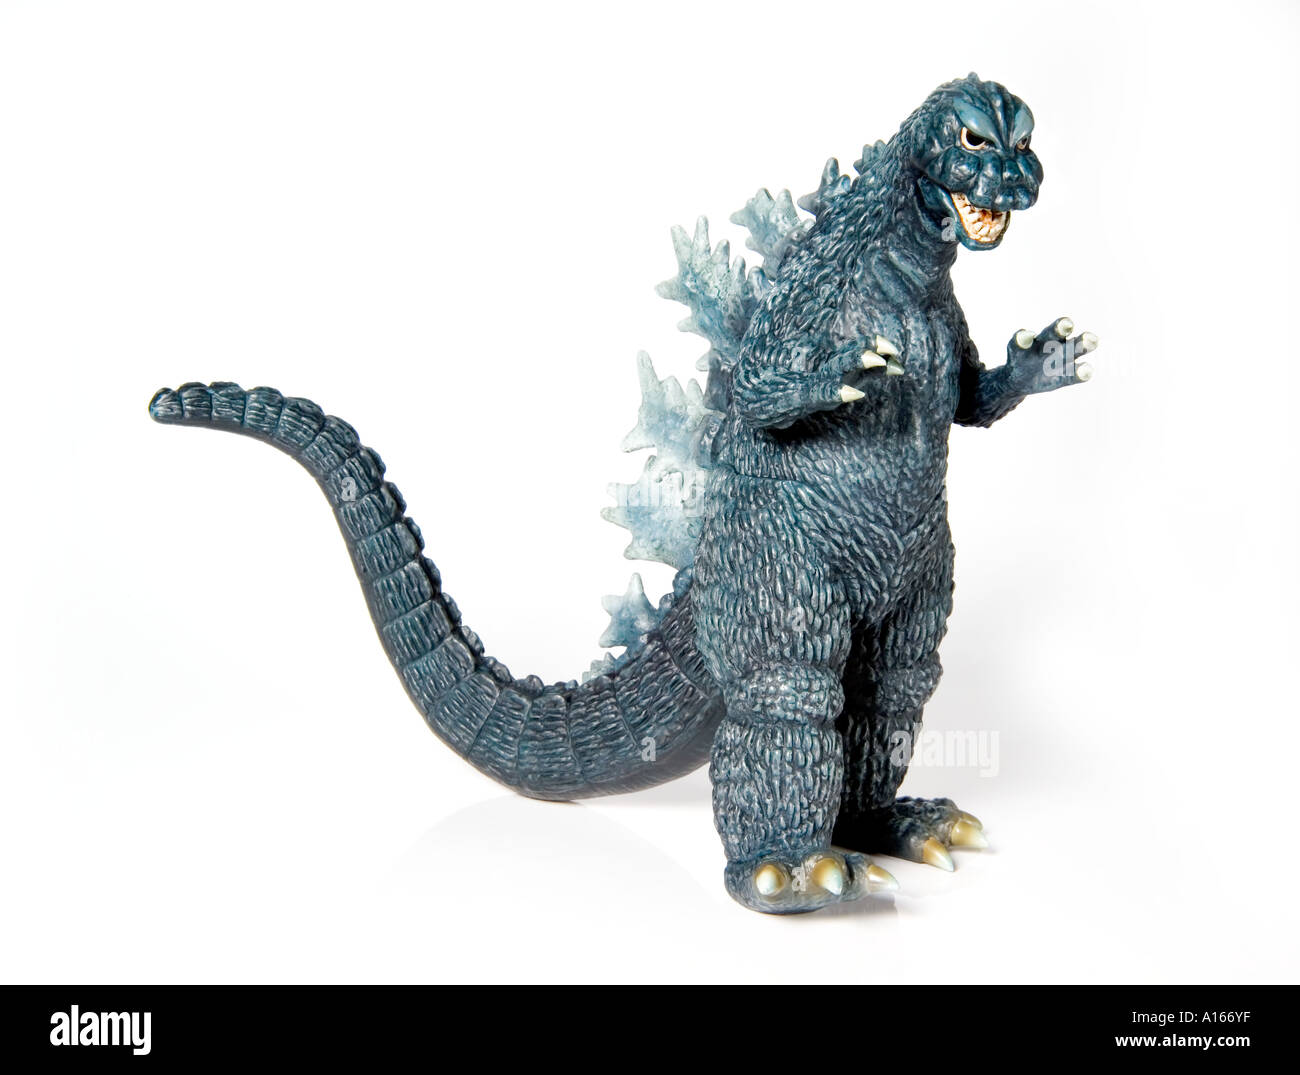 Juguetes de Godzilla Foto de stock